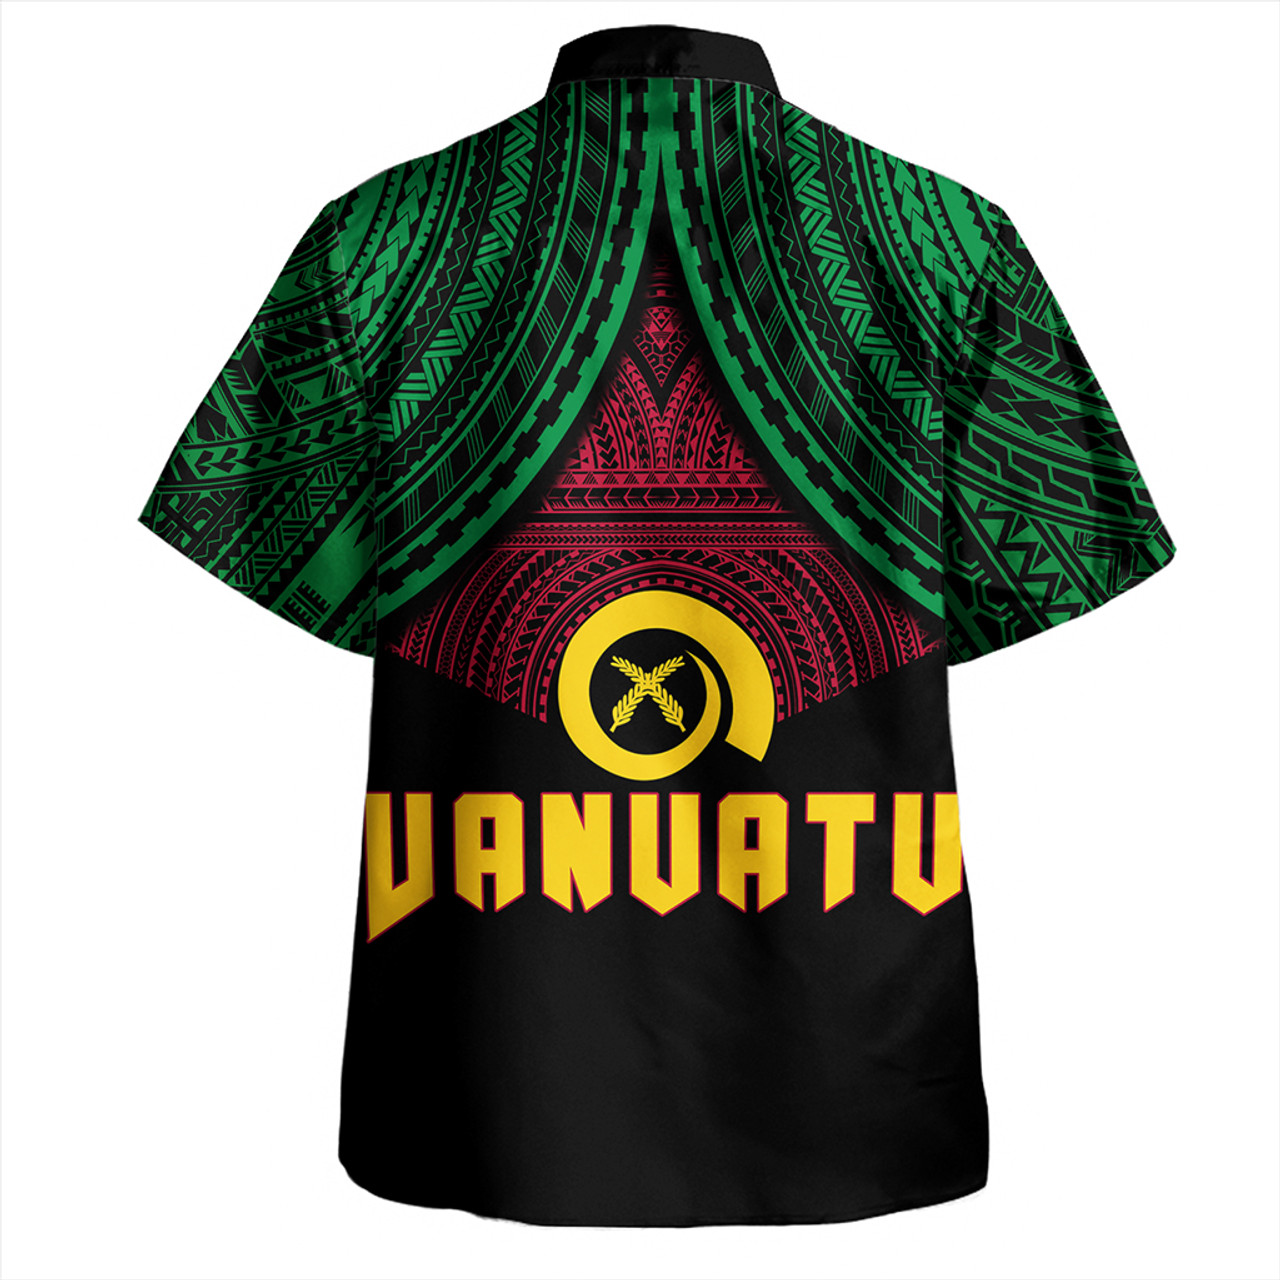 Vanuatu Hawaiian Shirt Coat Of Arms Tribal